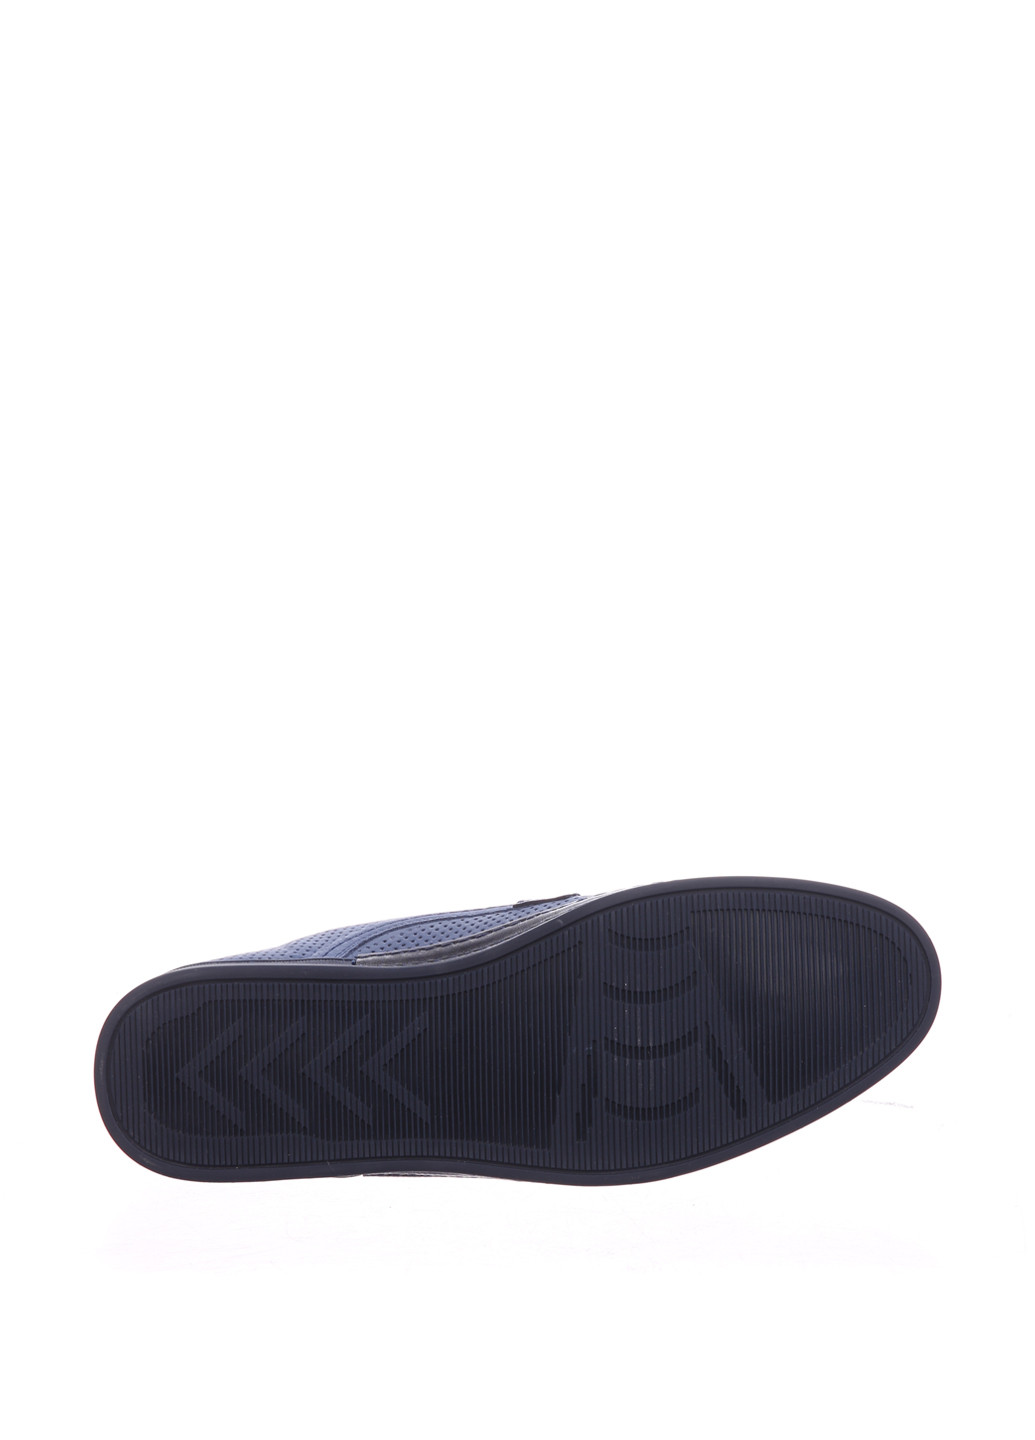 Темно-синие спортивные туфли Corso Vito на шнурках